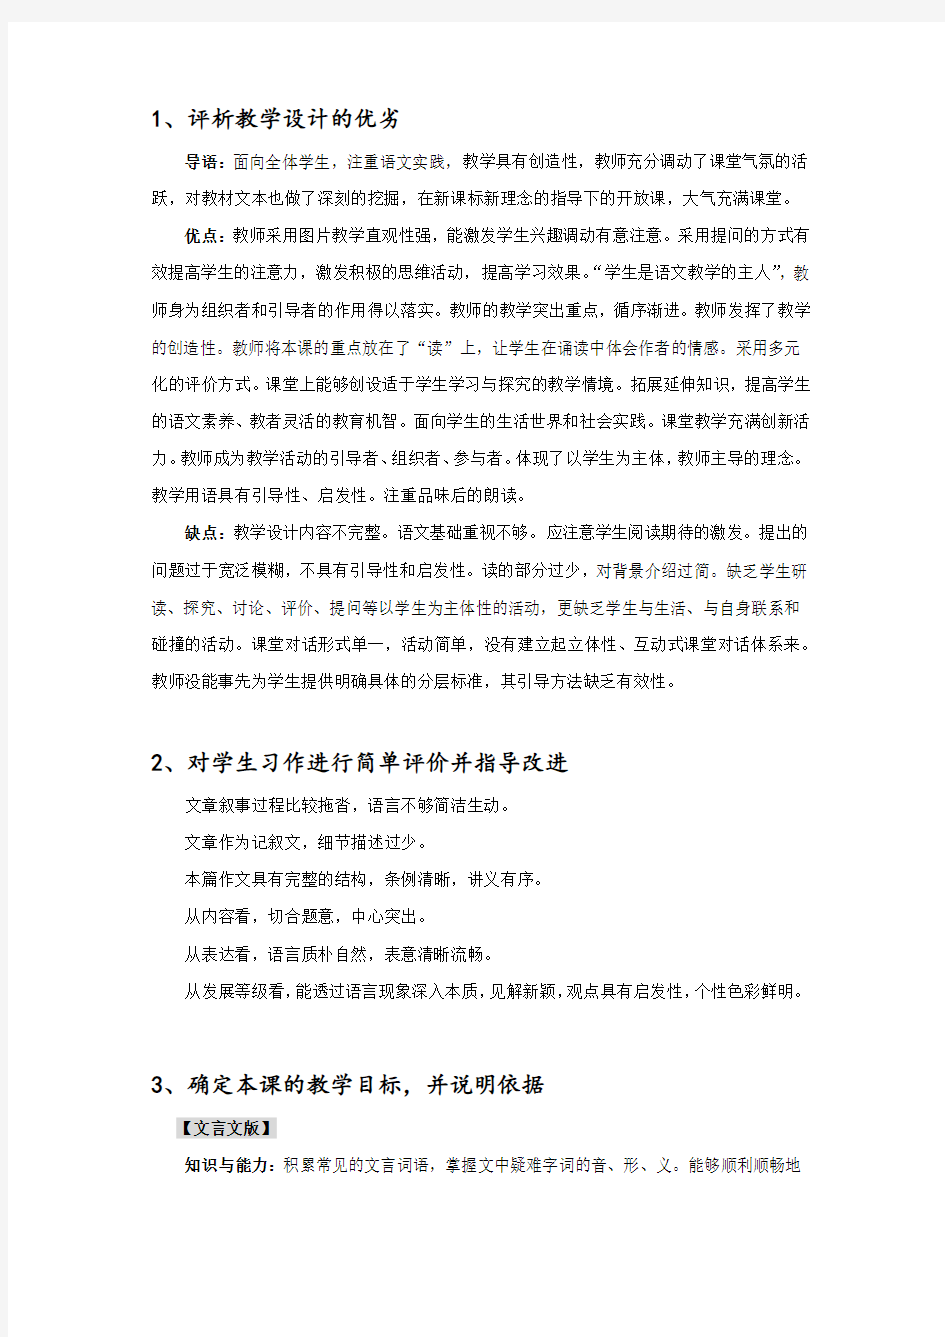 教师资格证考试初中语文答题模版(自己整理仅供参考)